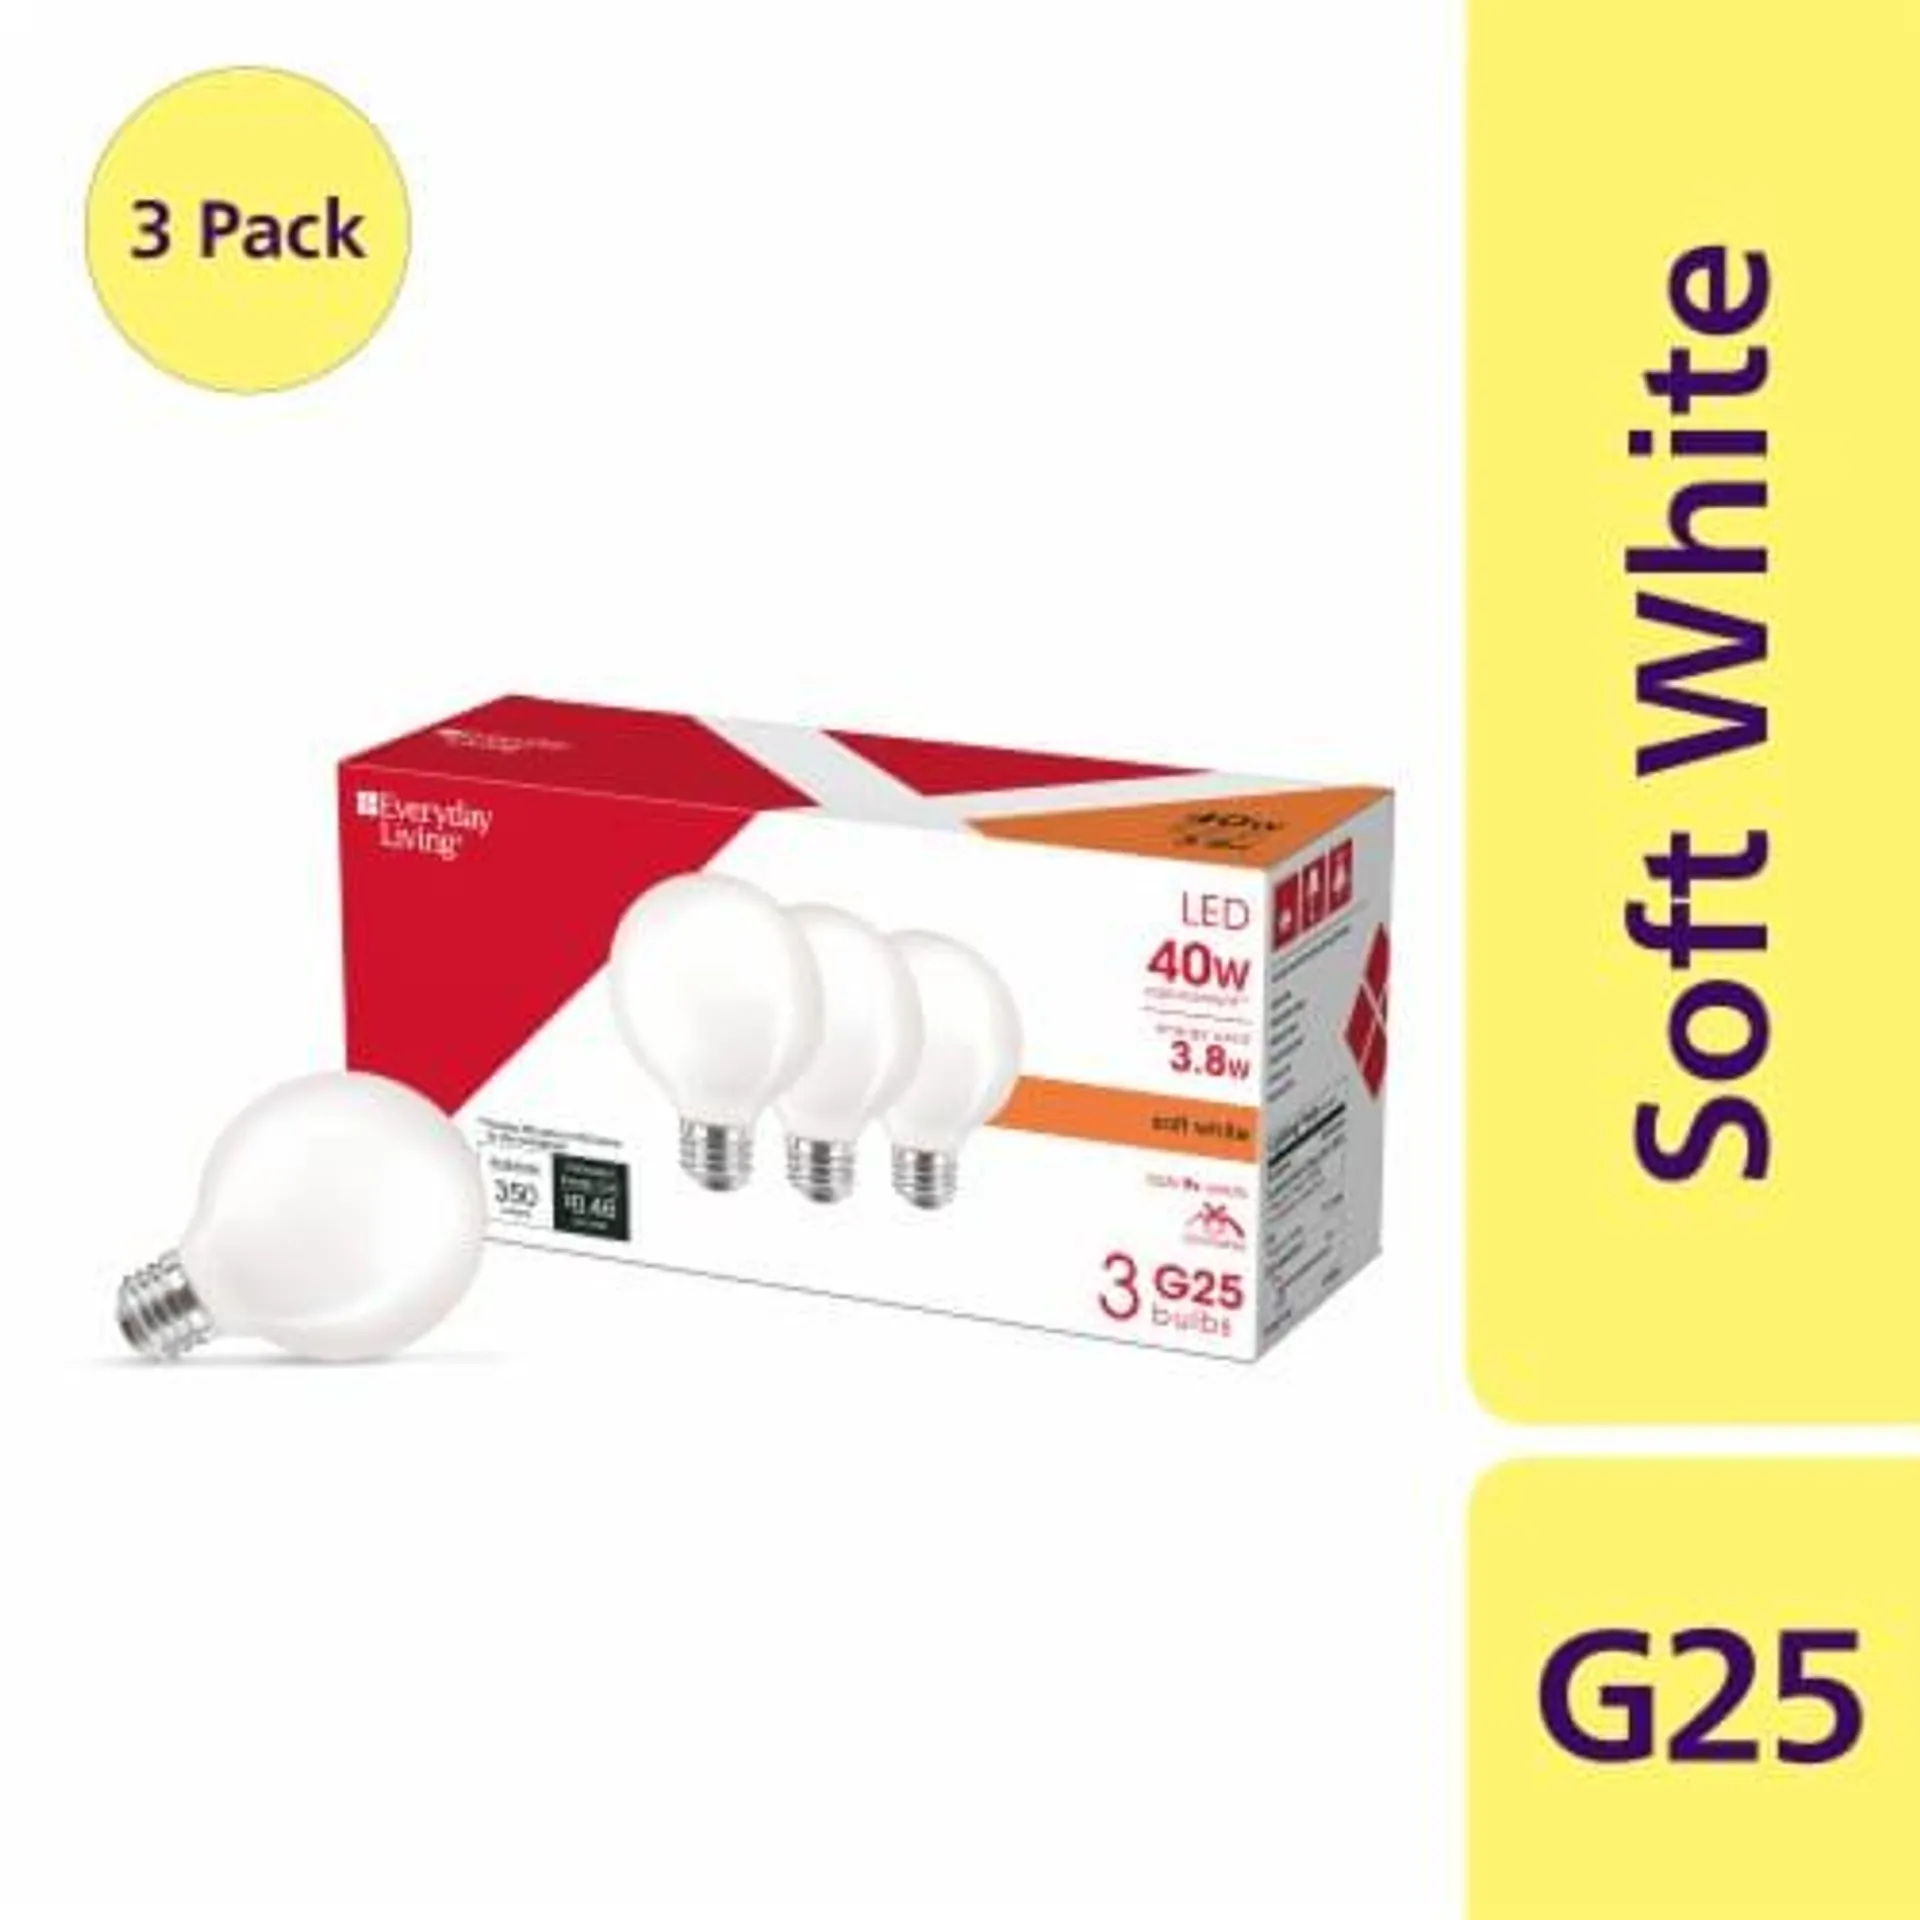 Everyday Living® 3.8-Watt (40-Watt) G25 Globe LED Light Bulb - Soft White (2700K)